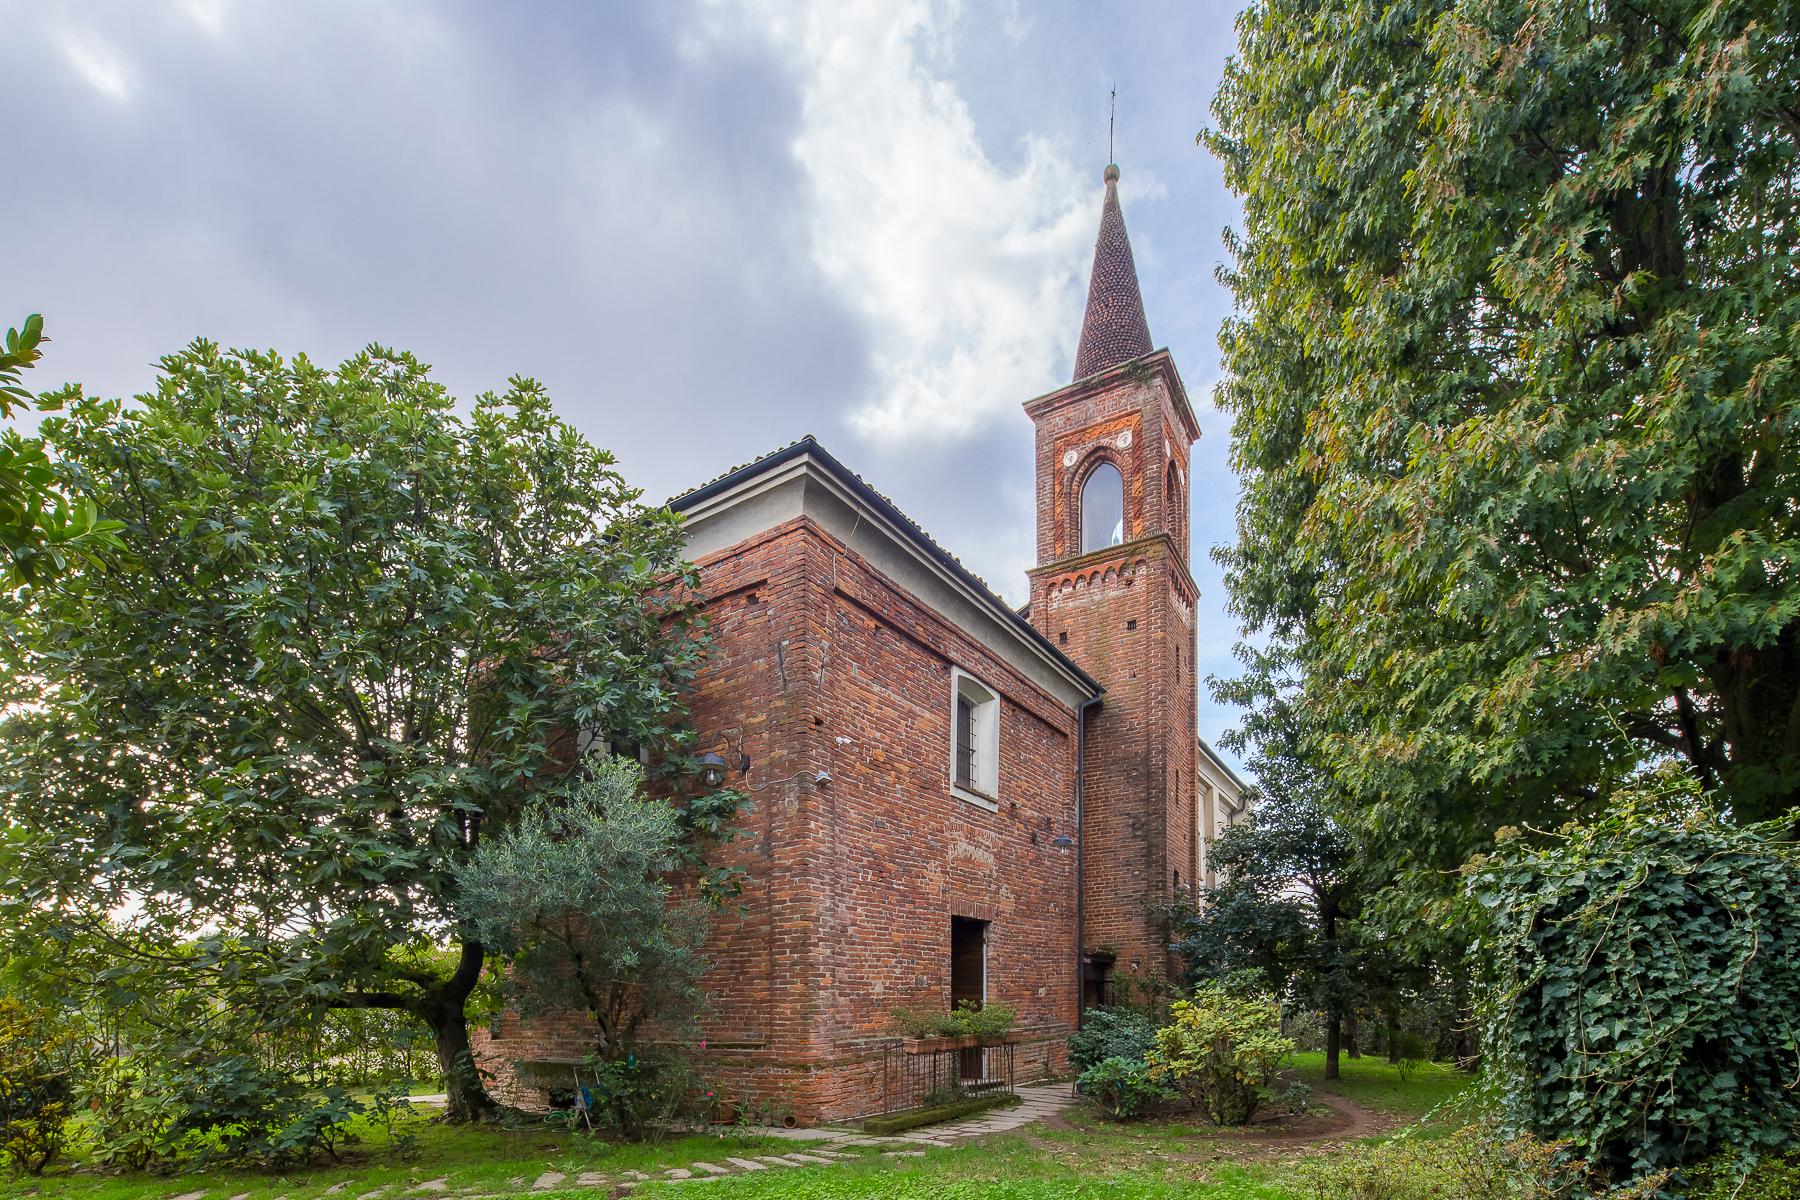 Historische entweihte Kirche mit Wohnzwecken, vom Garten umgeben - 1